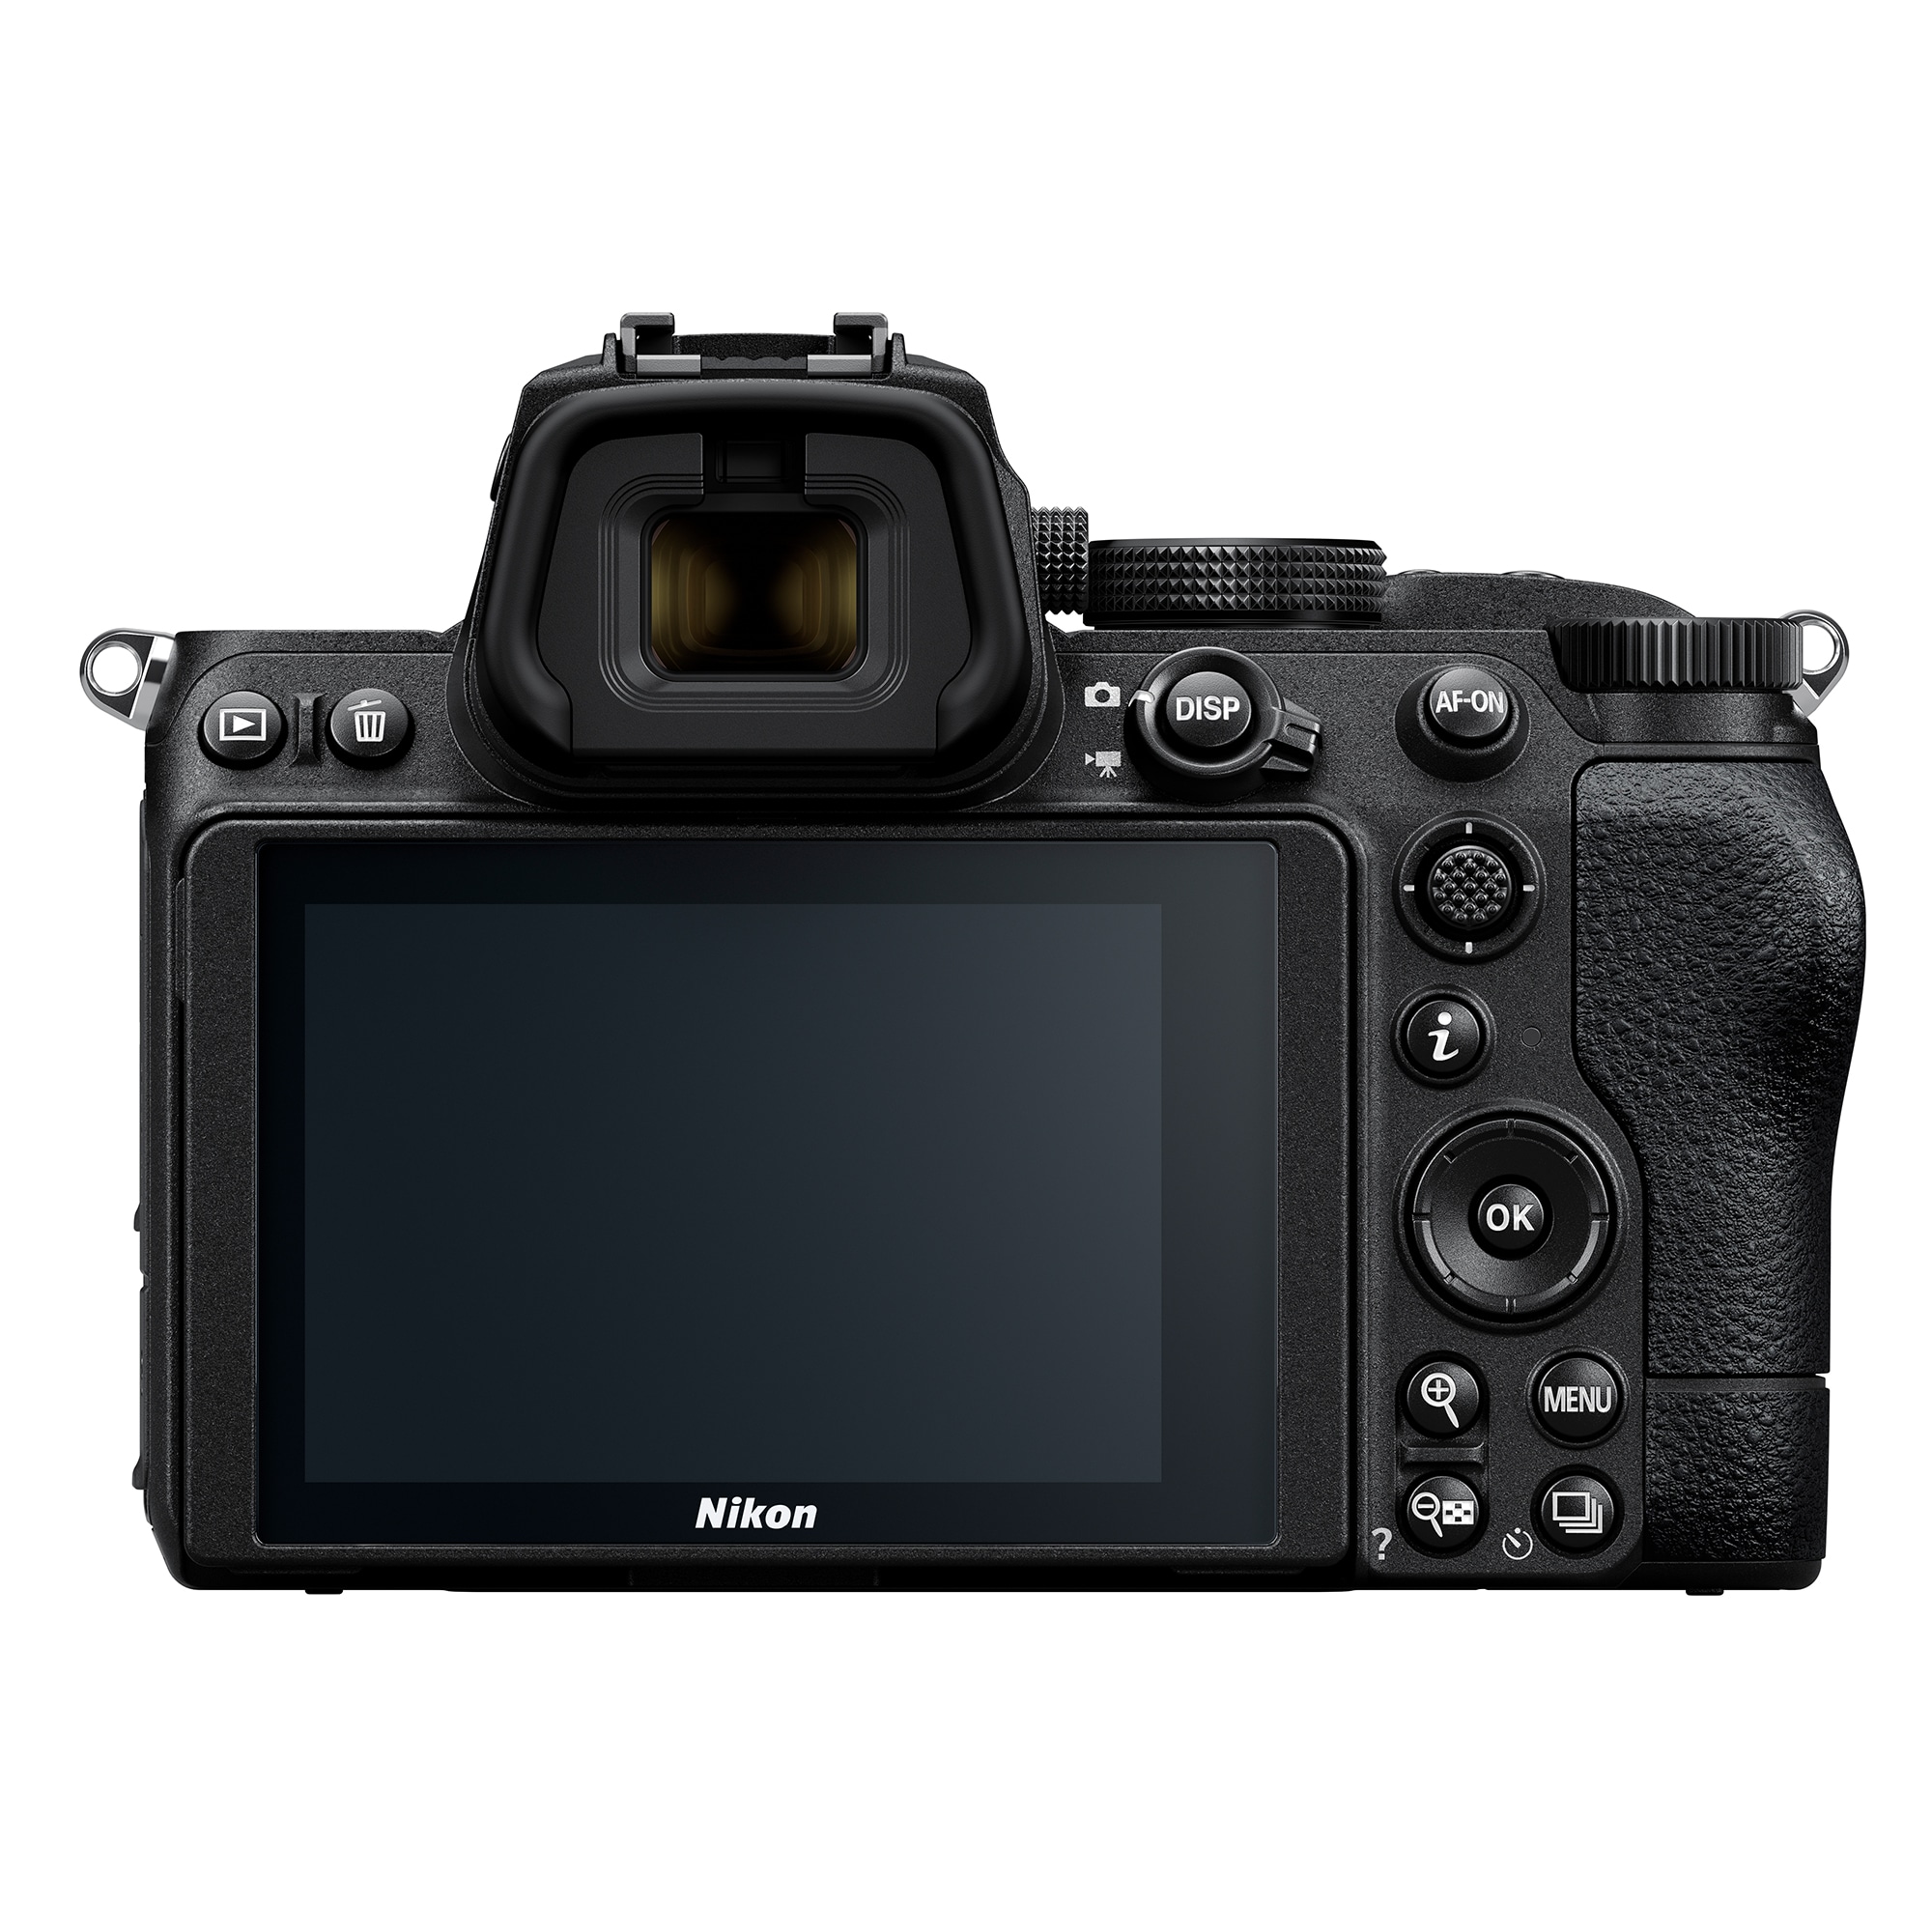 Nikon Z5 + NIKKOR Z 24-50mm f/4-6.3